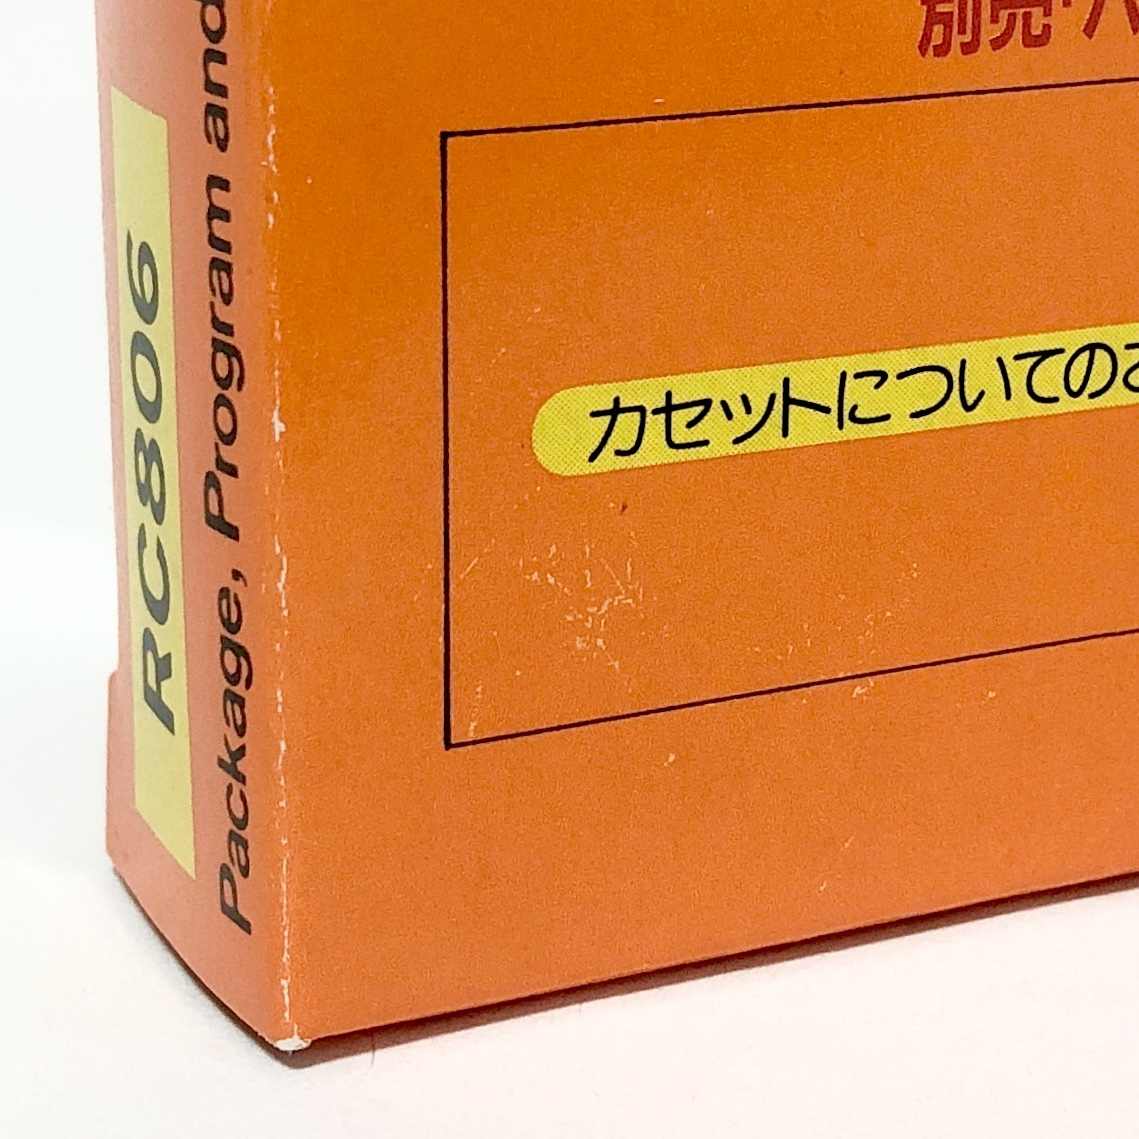 ファミコン ハイパースポーツ 箱説付き 動作確認済み コナミ レトロゲーム Nintendo Famicom Hyper Sports CIB Tested Konami_画像4